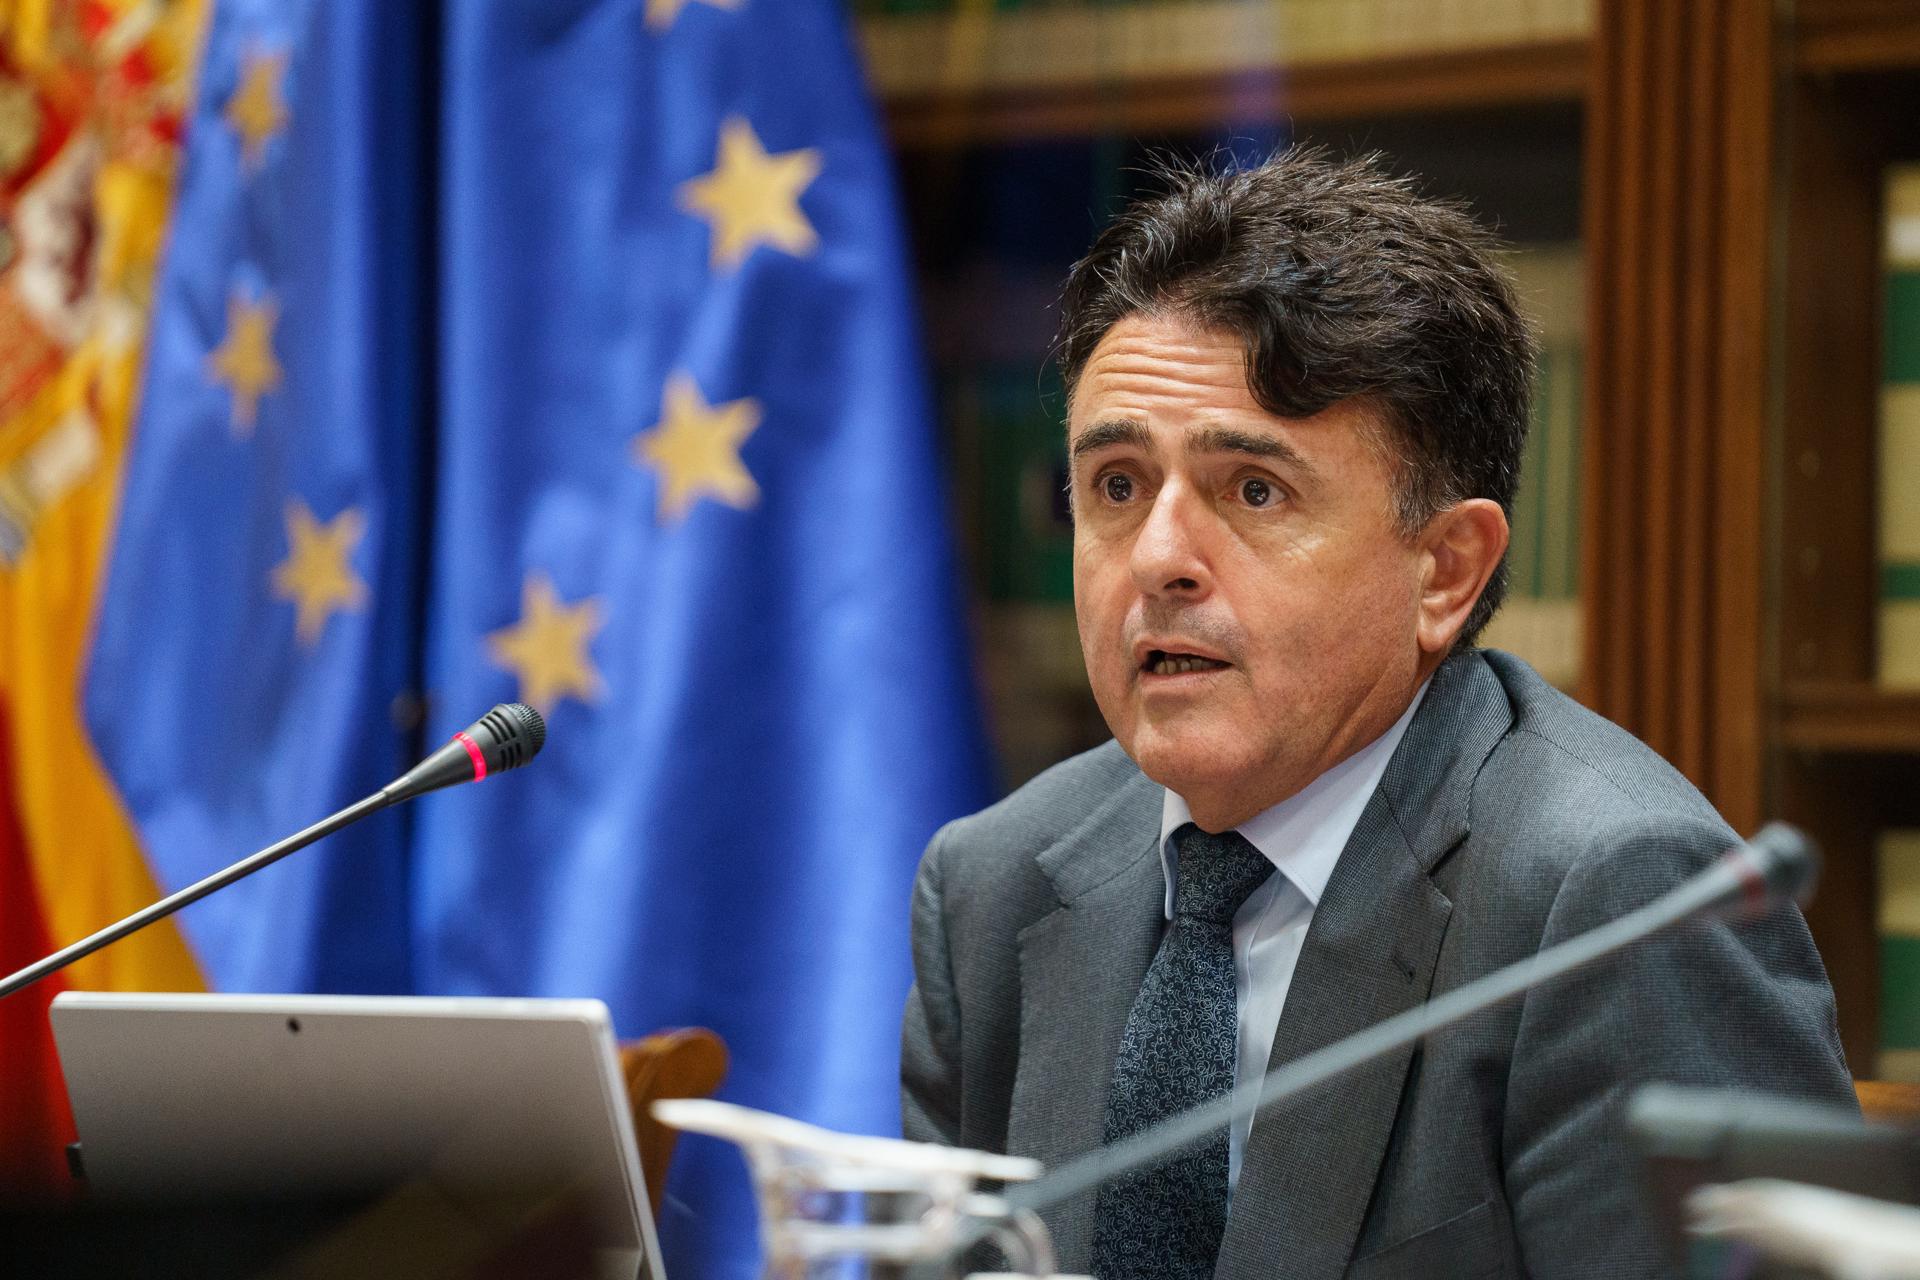 El presidente del Tribunal Superior de Justicia de Canarias, Juan Luis Lorenzo Bragado, presentó este lunes en comisión parlamentaria la memoria judicial de 2022. EFE/Ramón de la Rocha